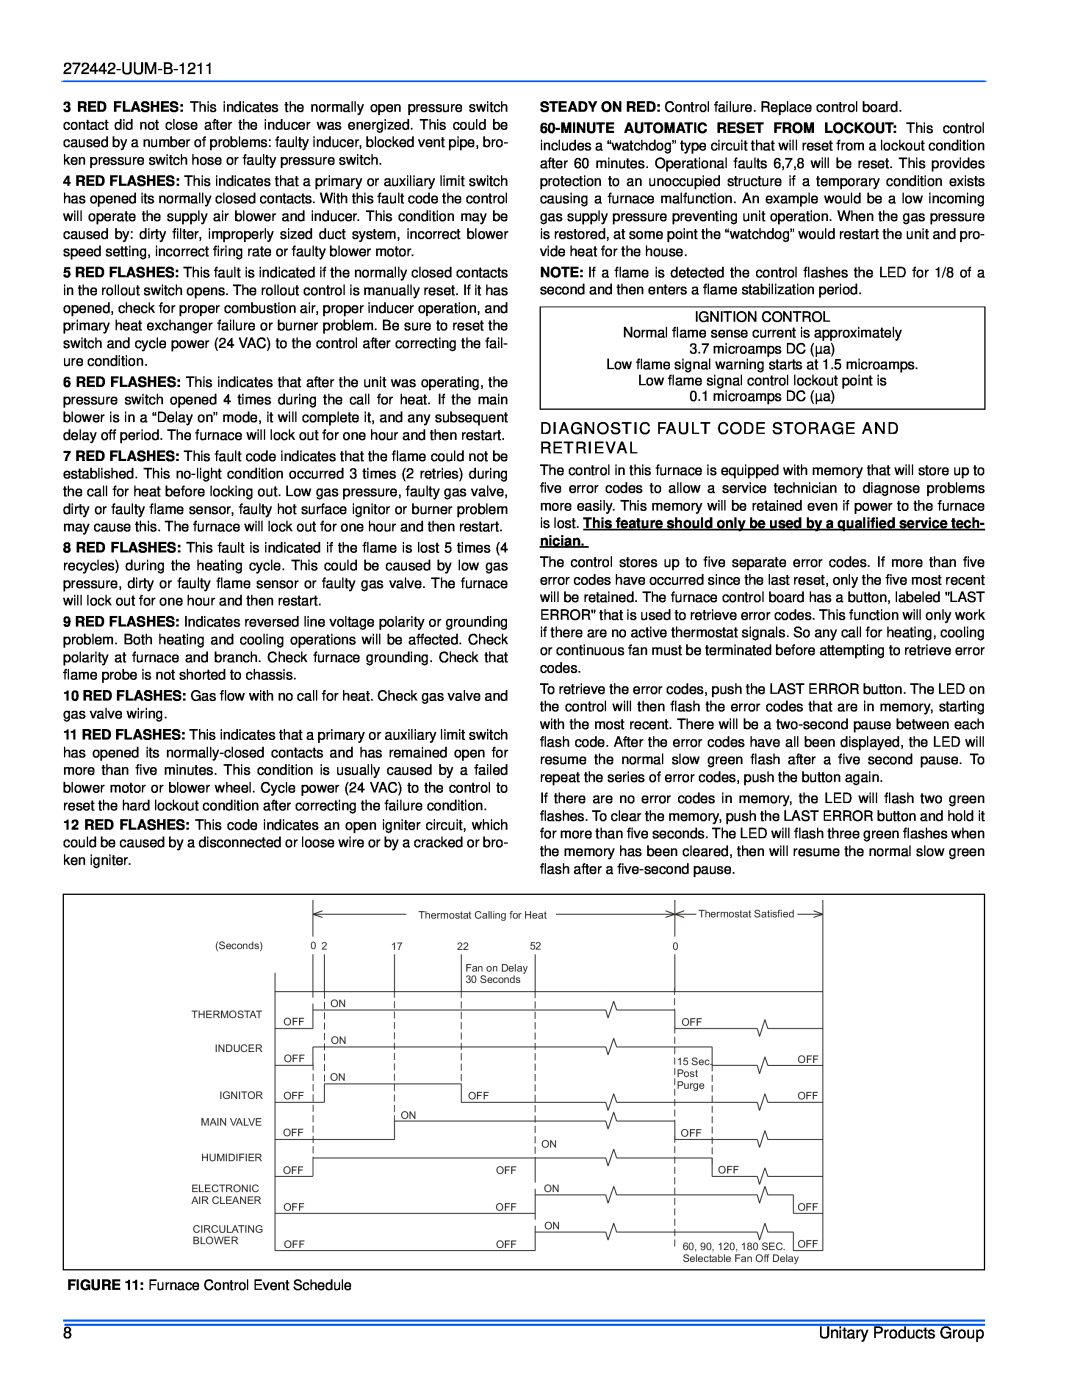 York GY8S160E30UH21 service manual Diagnostic Fault Code Storage And Retrieval, UUM-B-1211 